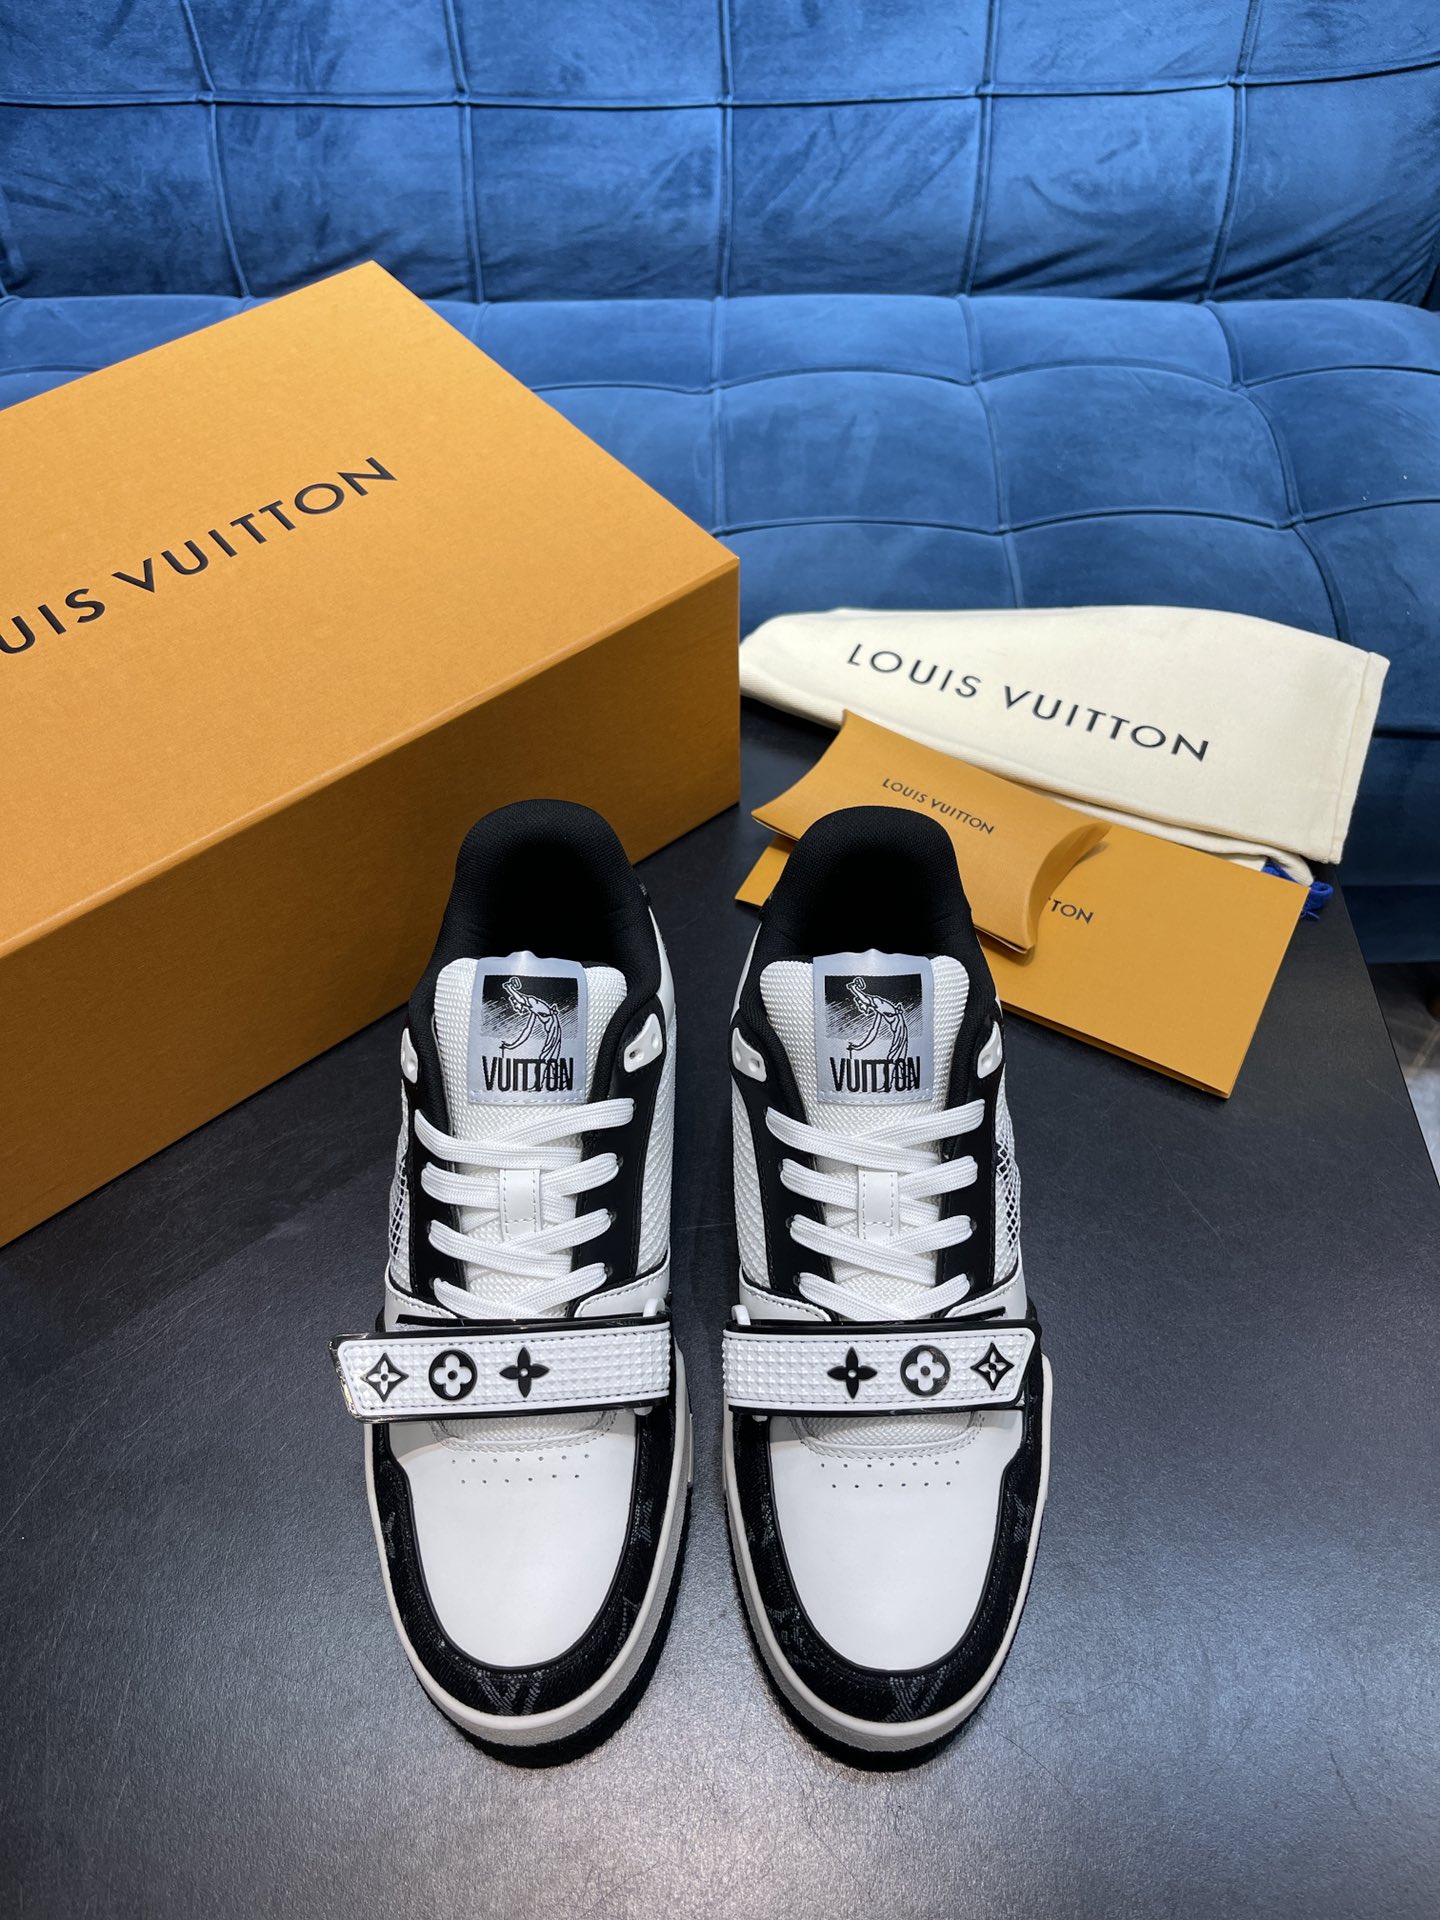 Louis Vuitton Shoes Sneakers Rubber Vintage Sweatpants